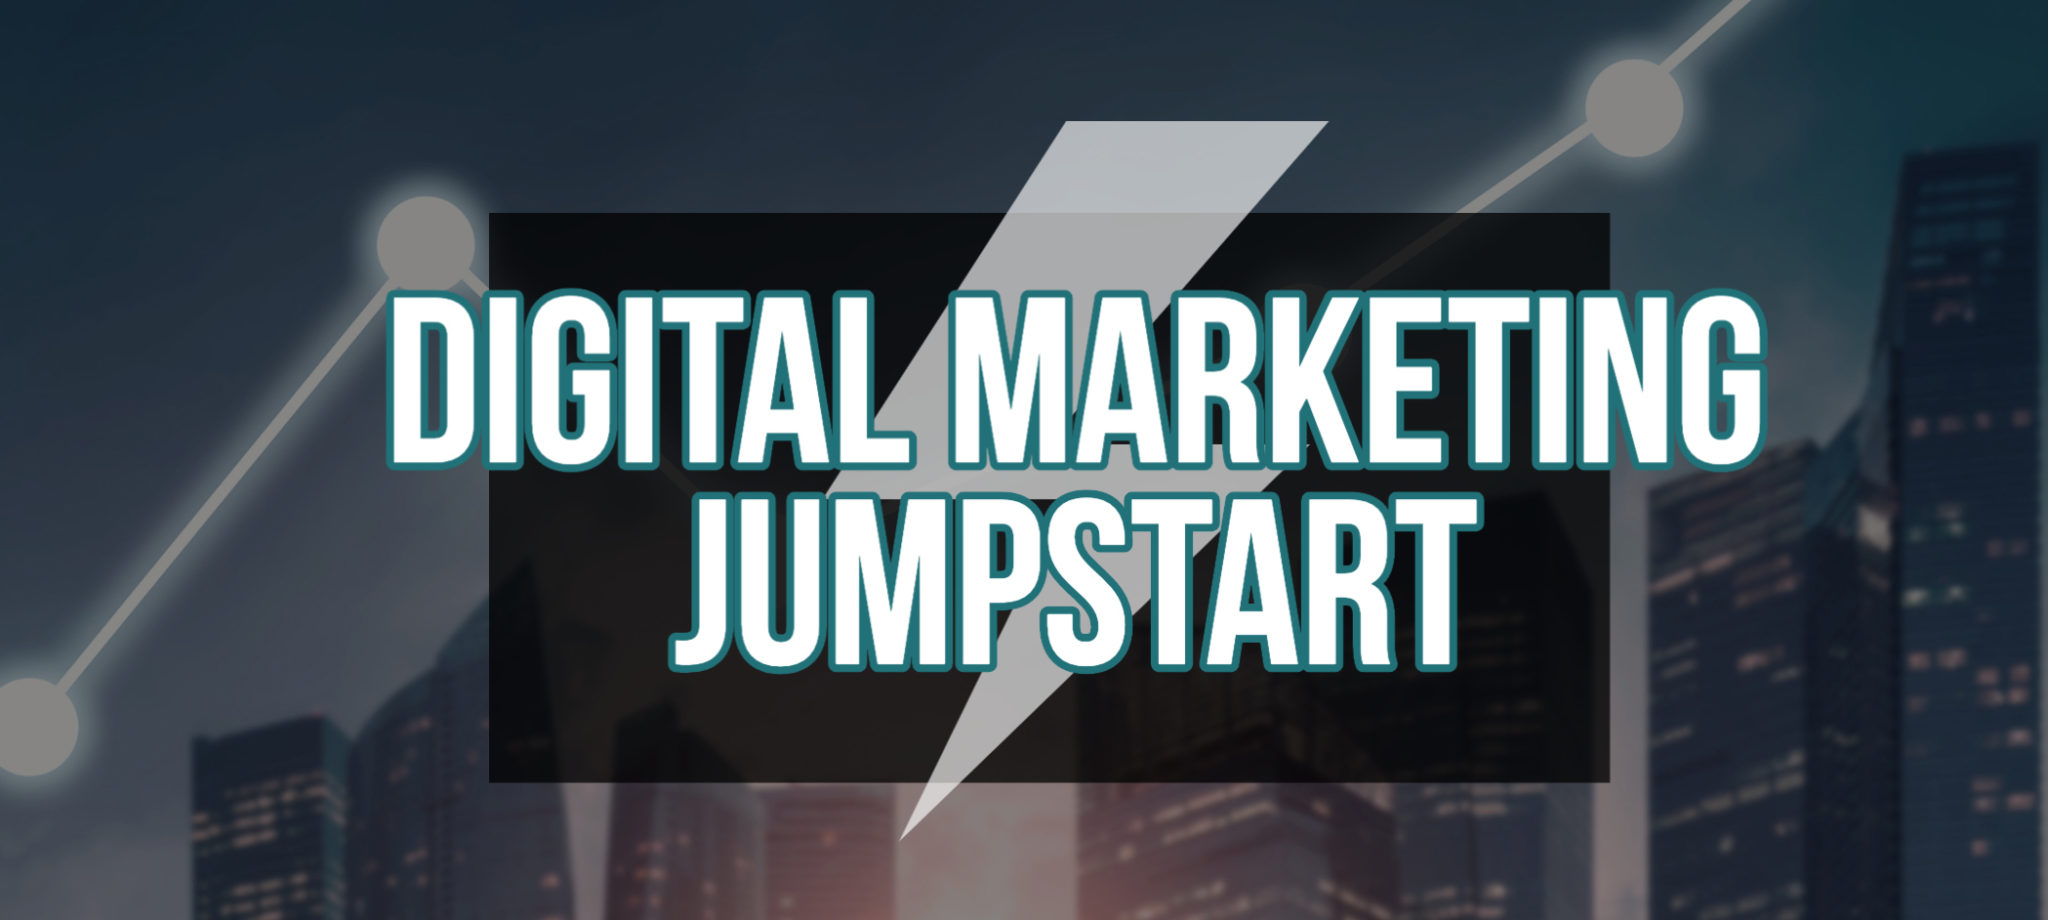 Digital Marketing Jumpstart Event Header